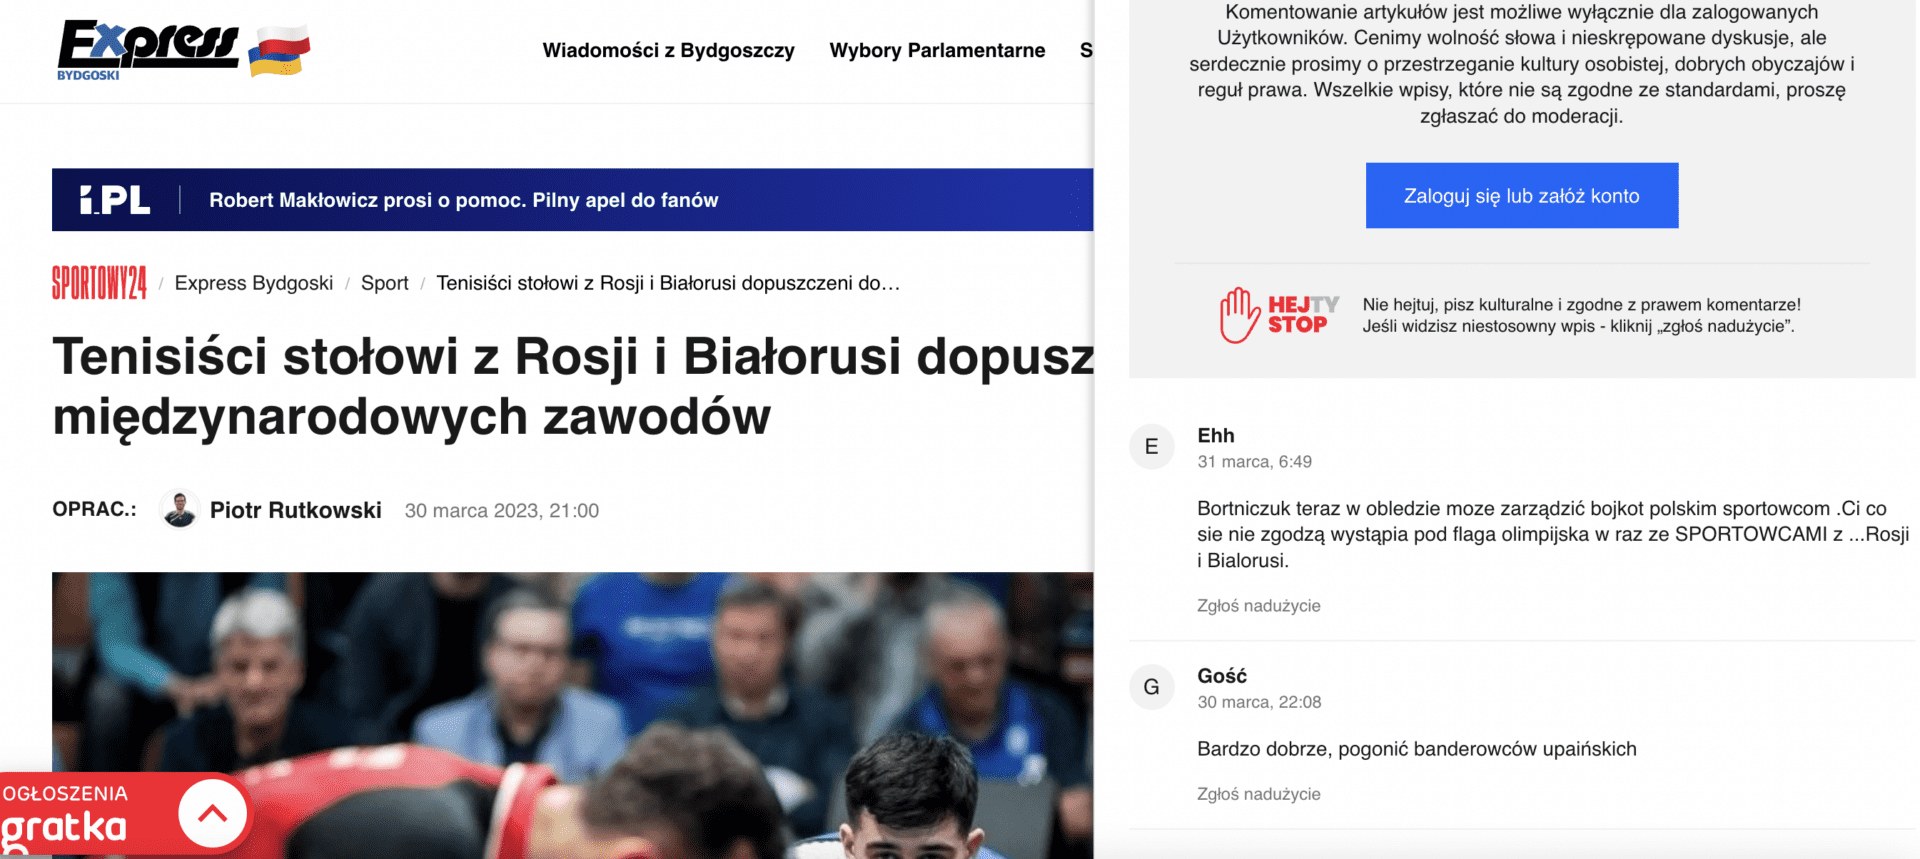 Antyukraiński komentarz w serwisie Expressbydgoski.pl